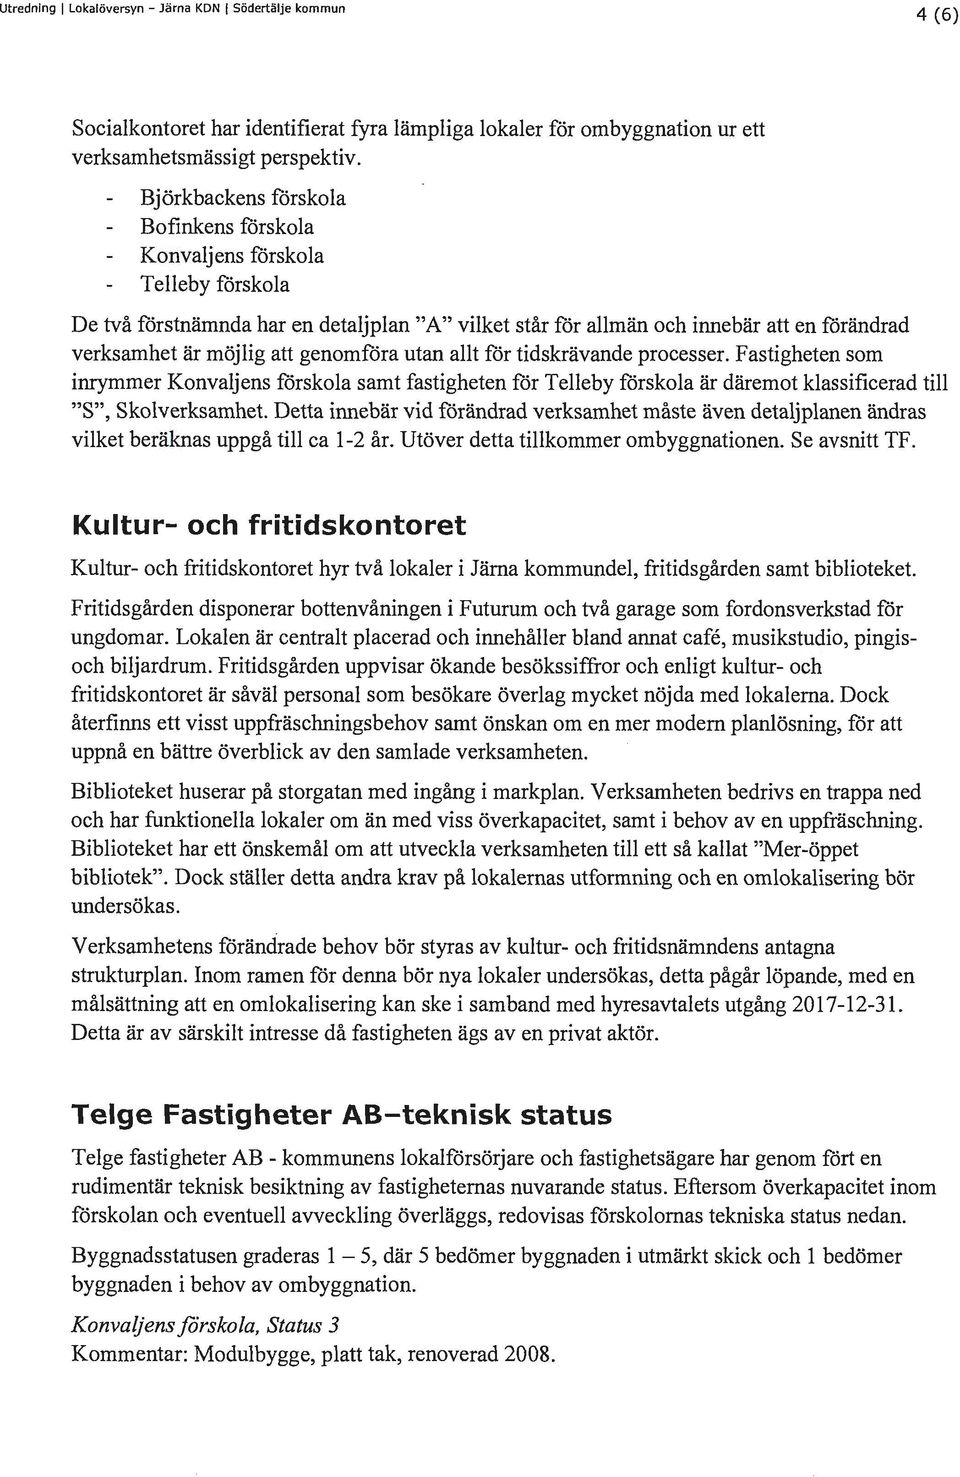 Södertä1fe 1<ommun. Lokalöversyn Järna kommundel. Dnr: Jä PDF Free Download